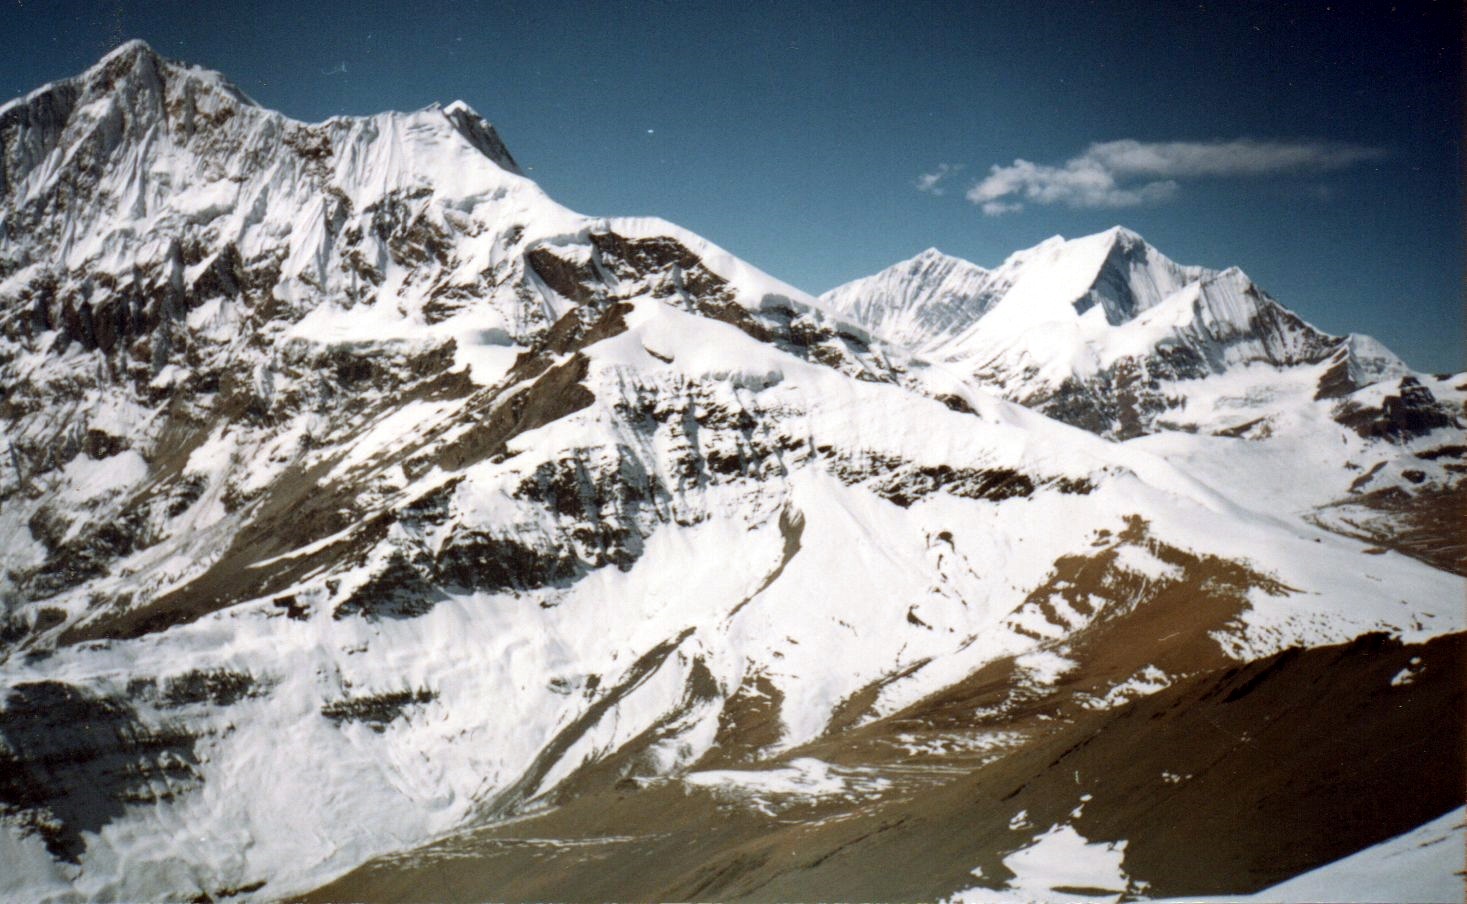 Tukuche Peak and Dhaulagiris II, III and V from Thapa Peak